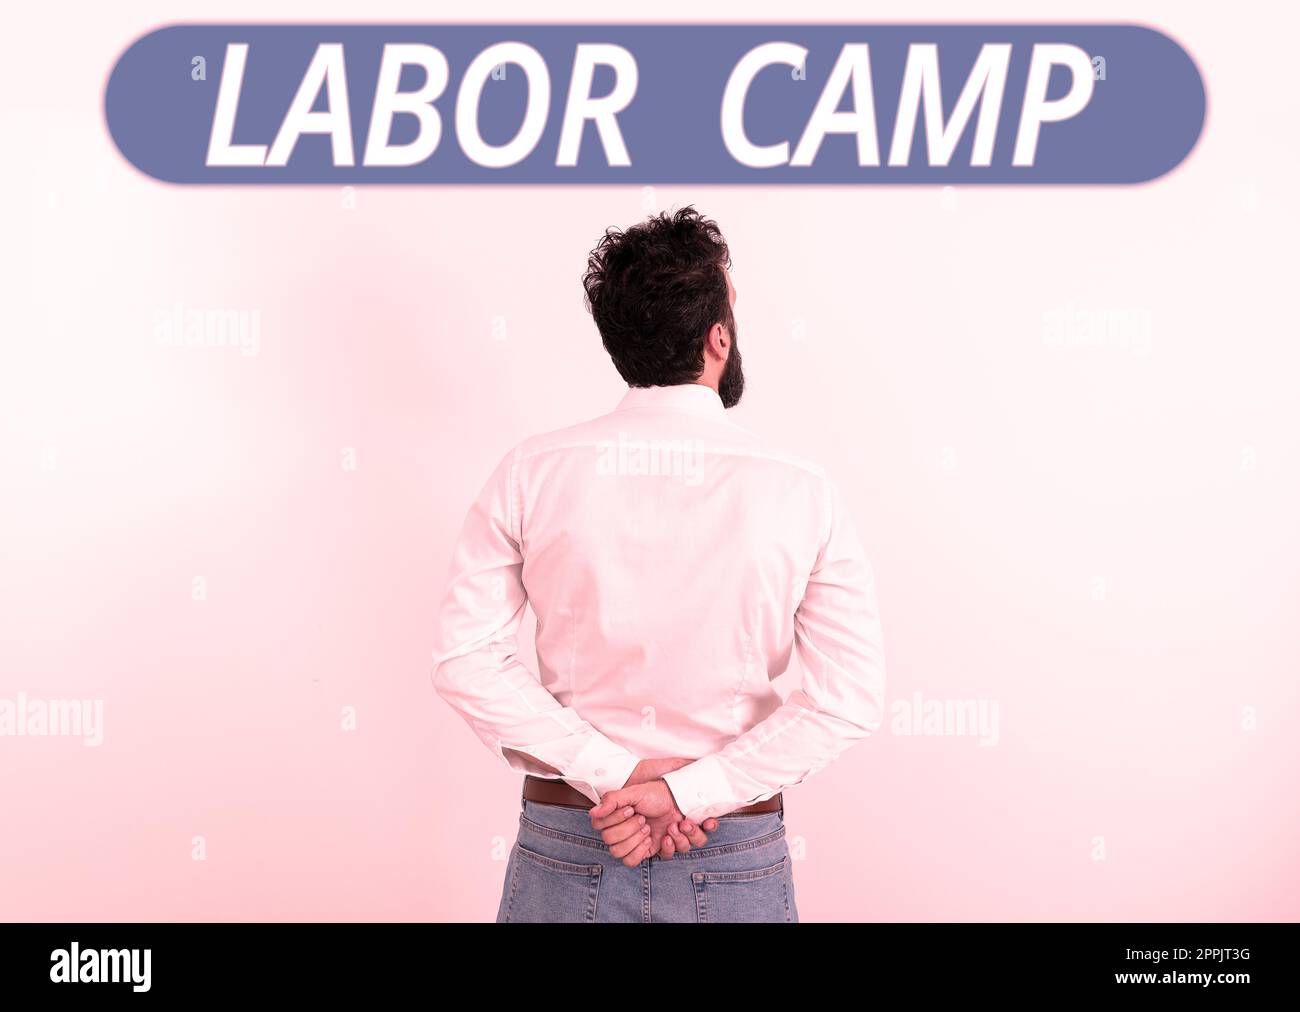 Panneau de texte indiquant Labor Camp. Photo conceptuelle colonie pénitentiaire où le travail forcé est exécuté Banque D'Images